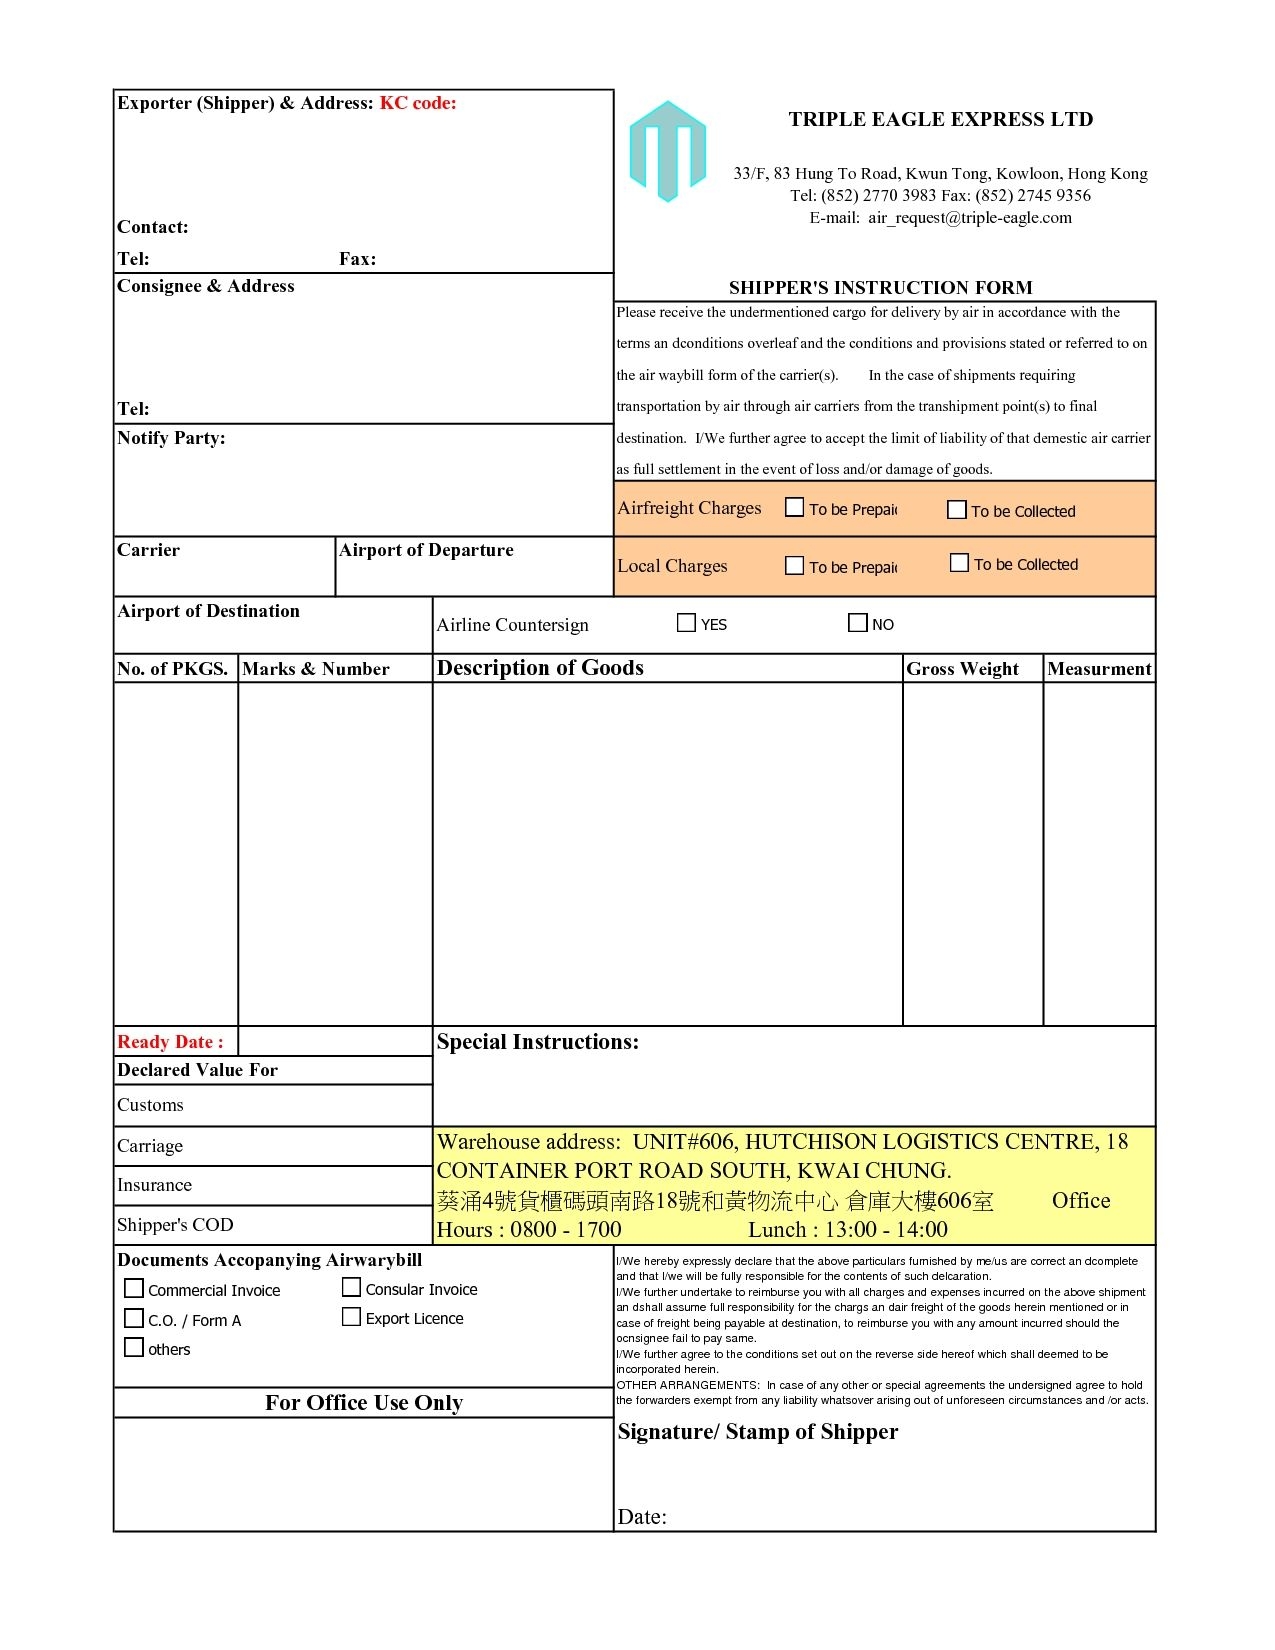 consular invoice format pdf invoicegenerator consular show the image of consular invoice